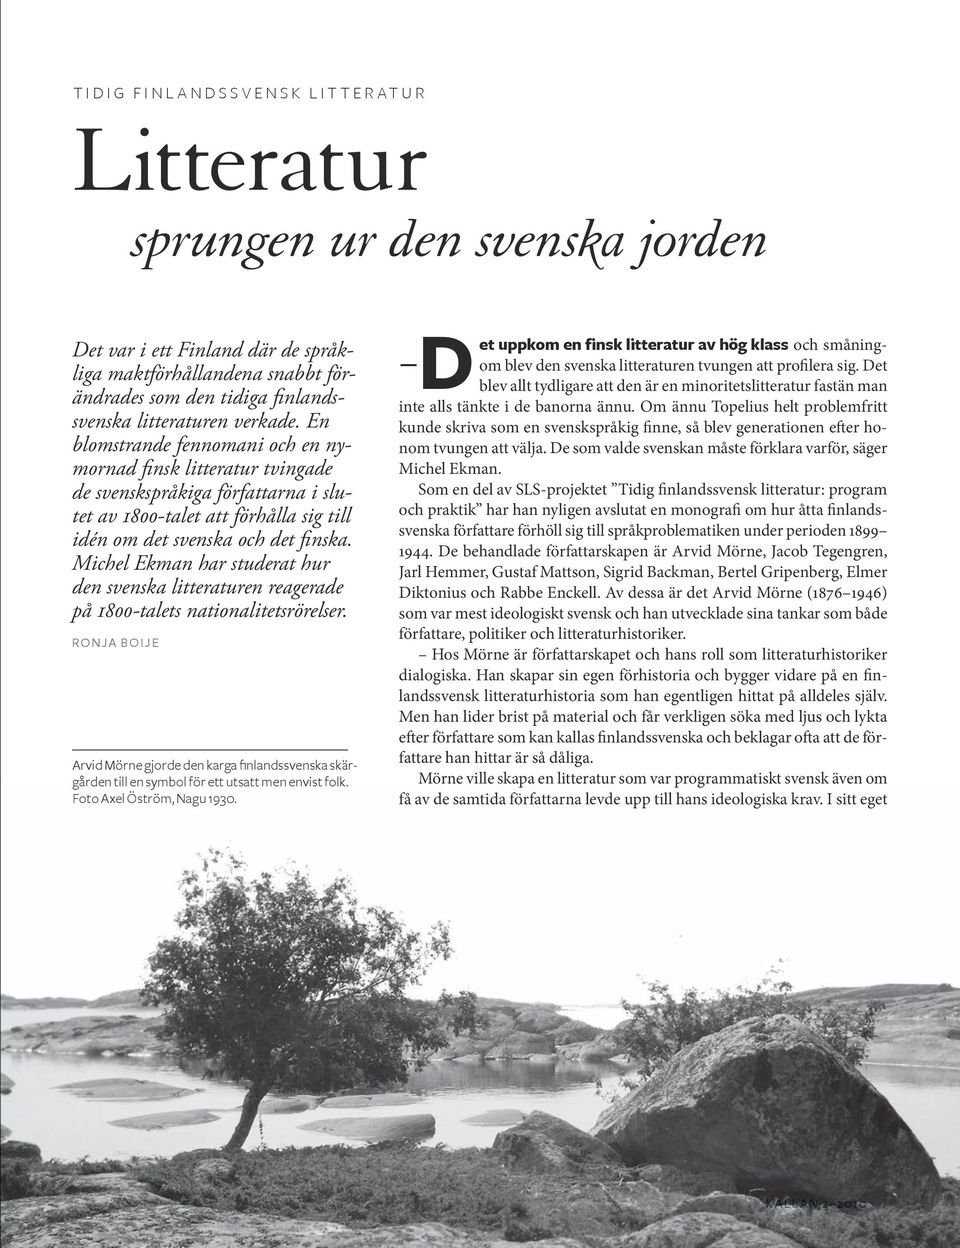 En blomstrande fennomani och en nymornad finsk litteratur tvingade de svenskspråkiga författarna i slutet av 1800-talet att förhålla sig till idén om det svenska och det finska.